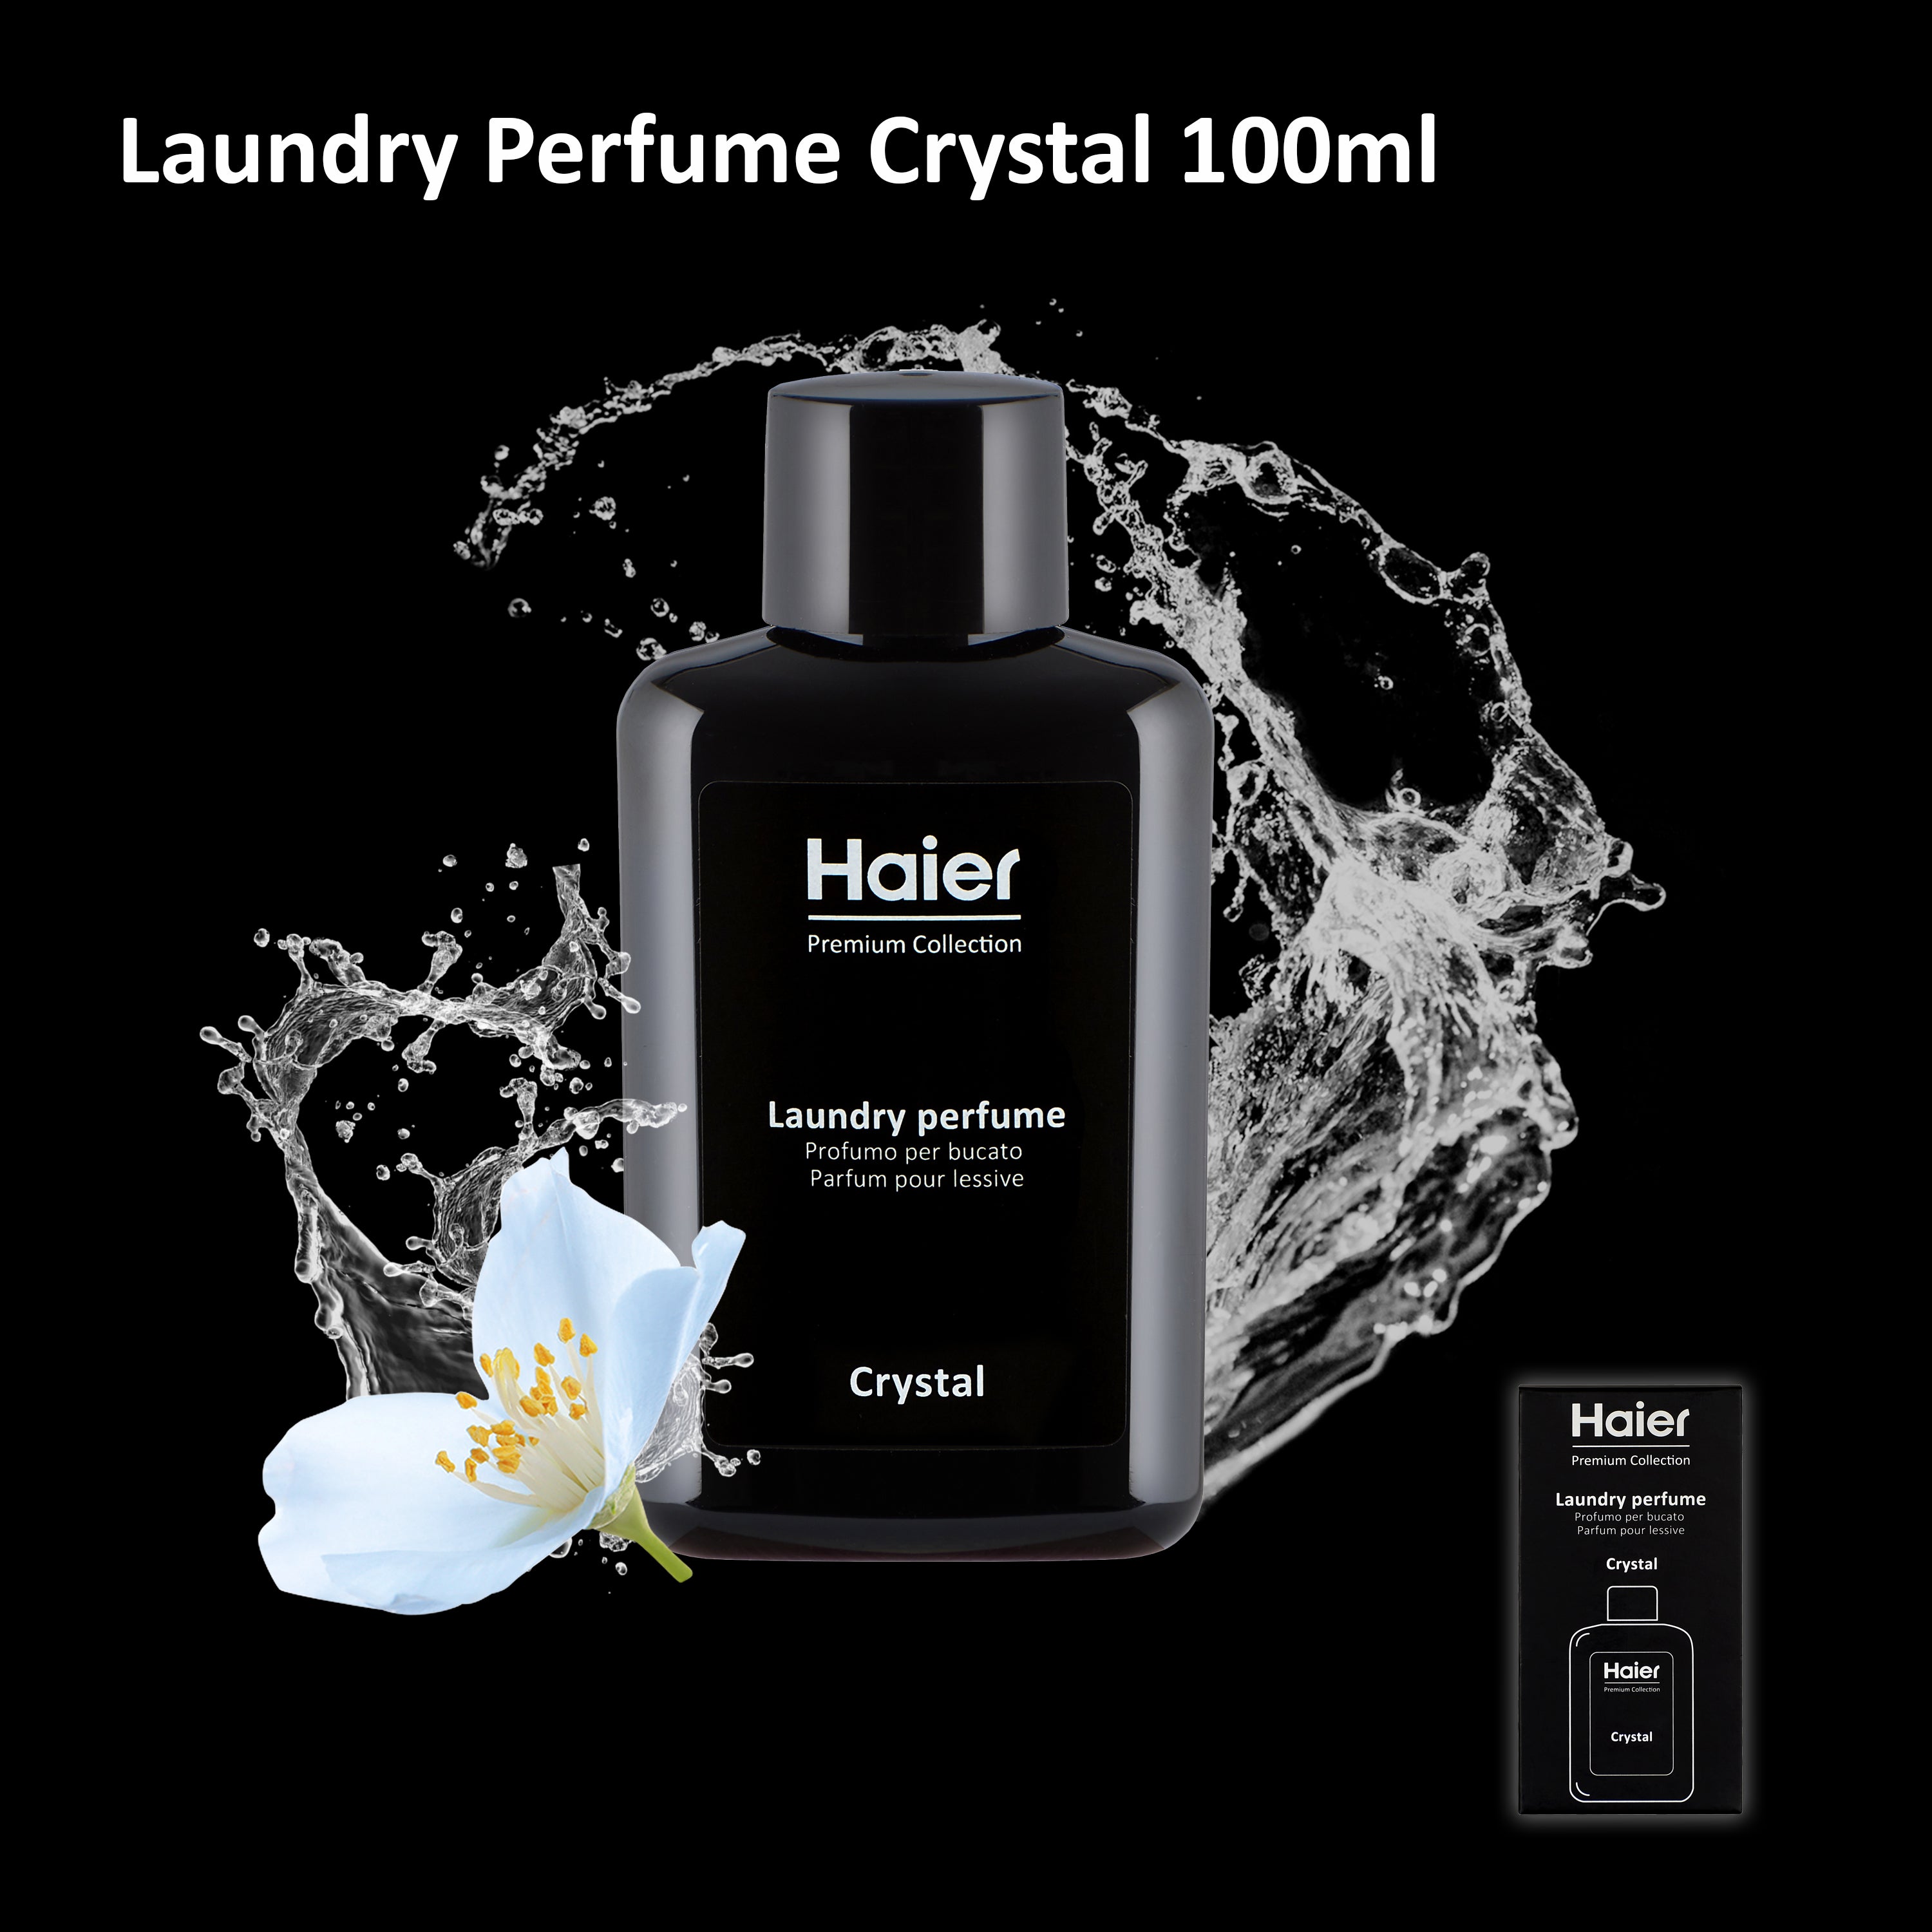 Haier Laundry Perfume Bundle